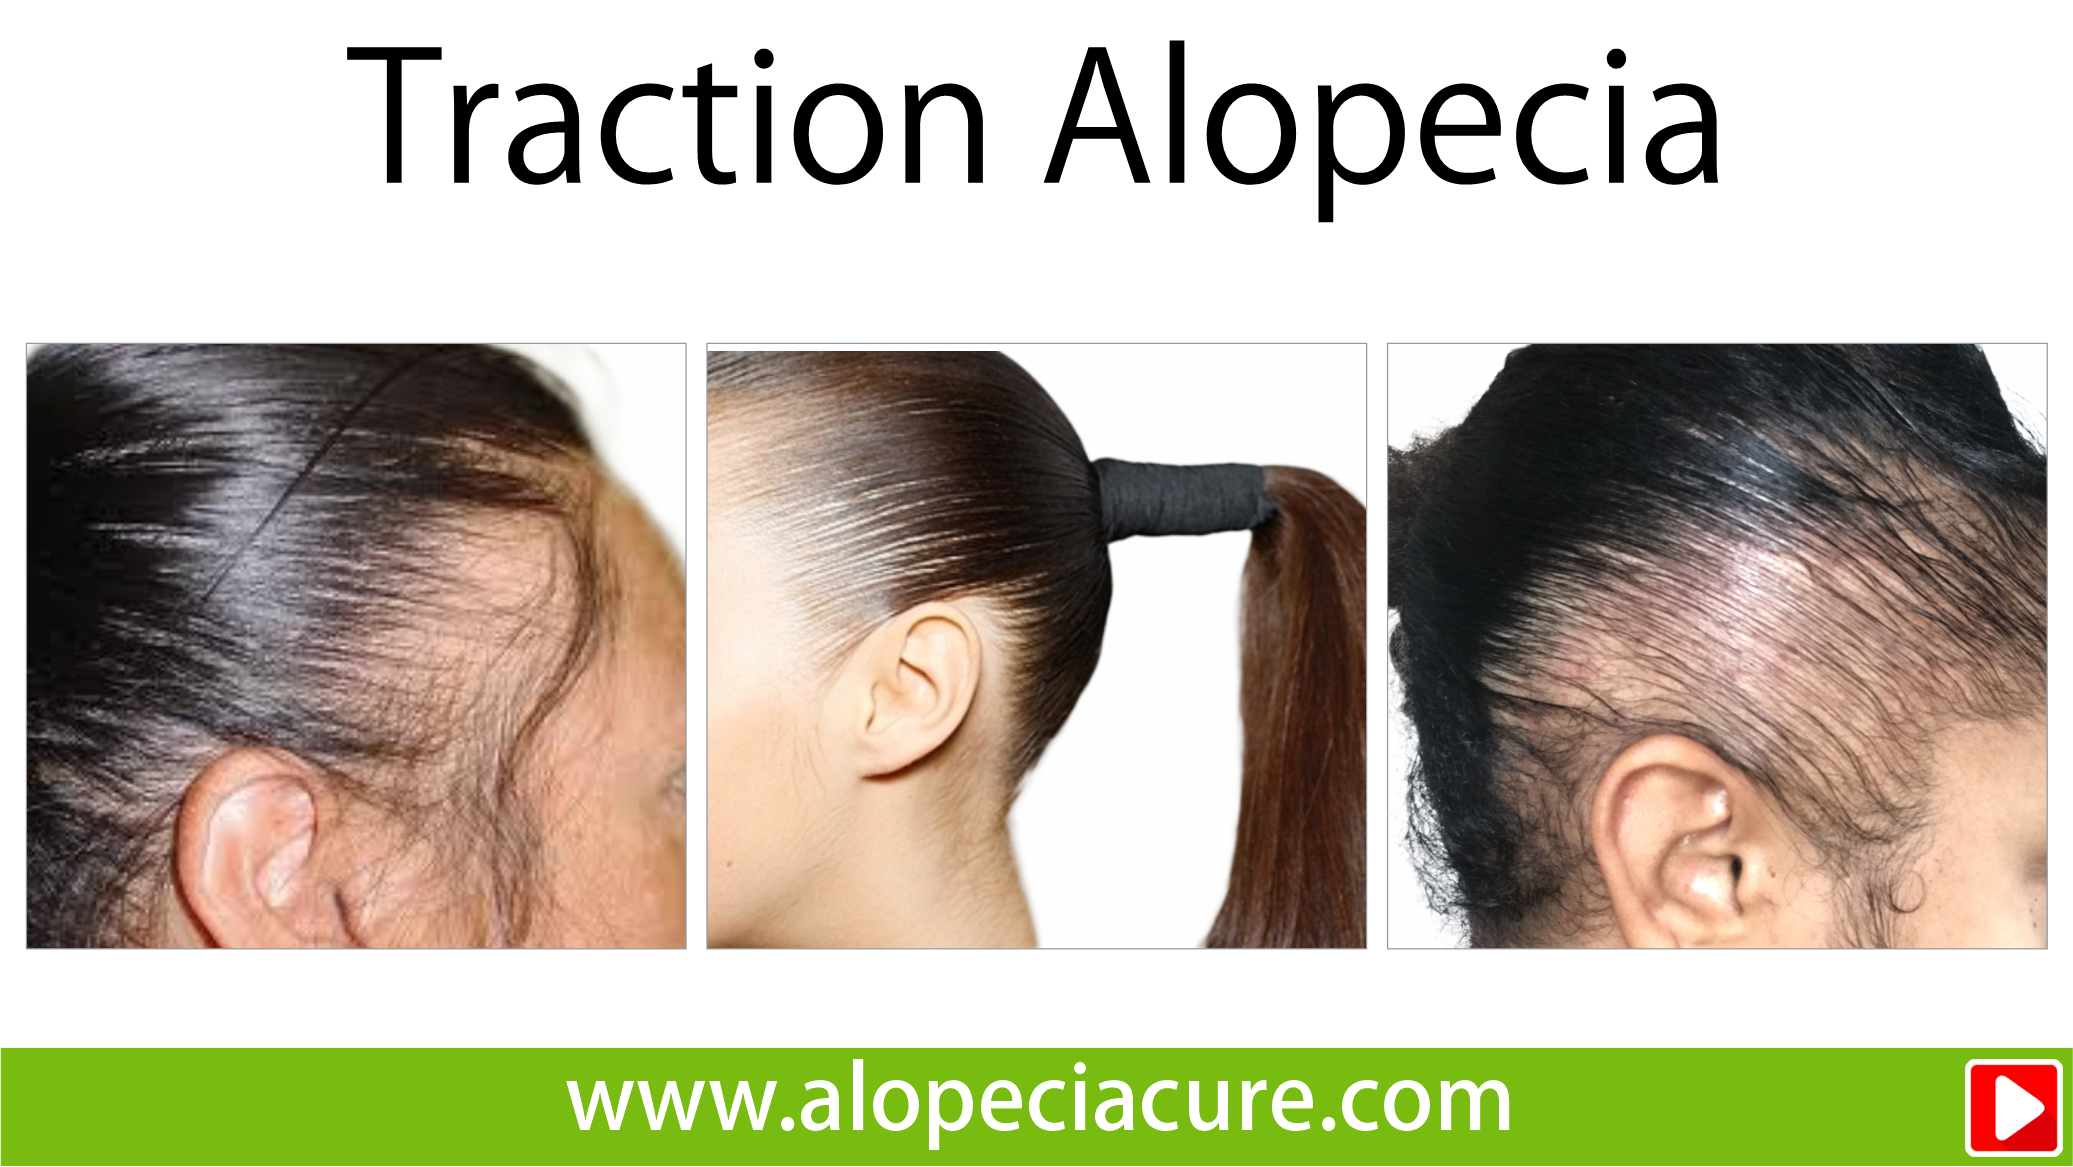 tractional alopecia treatment